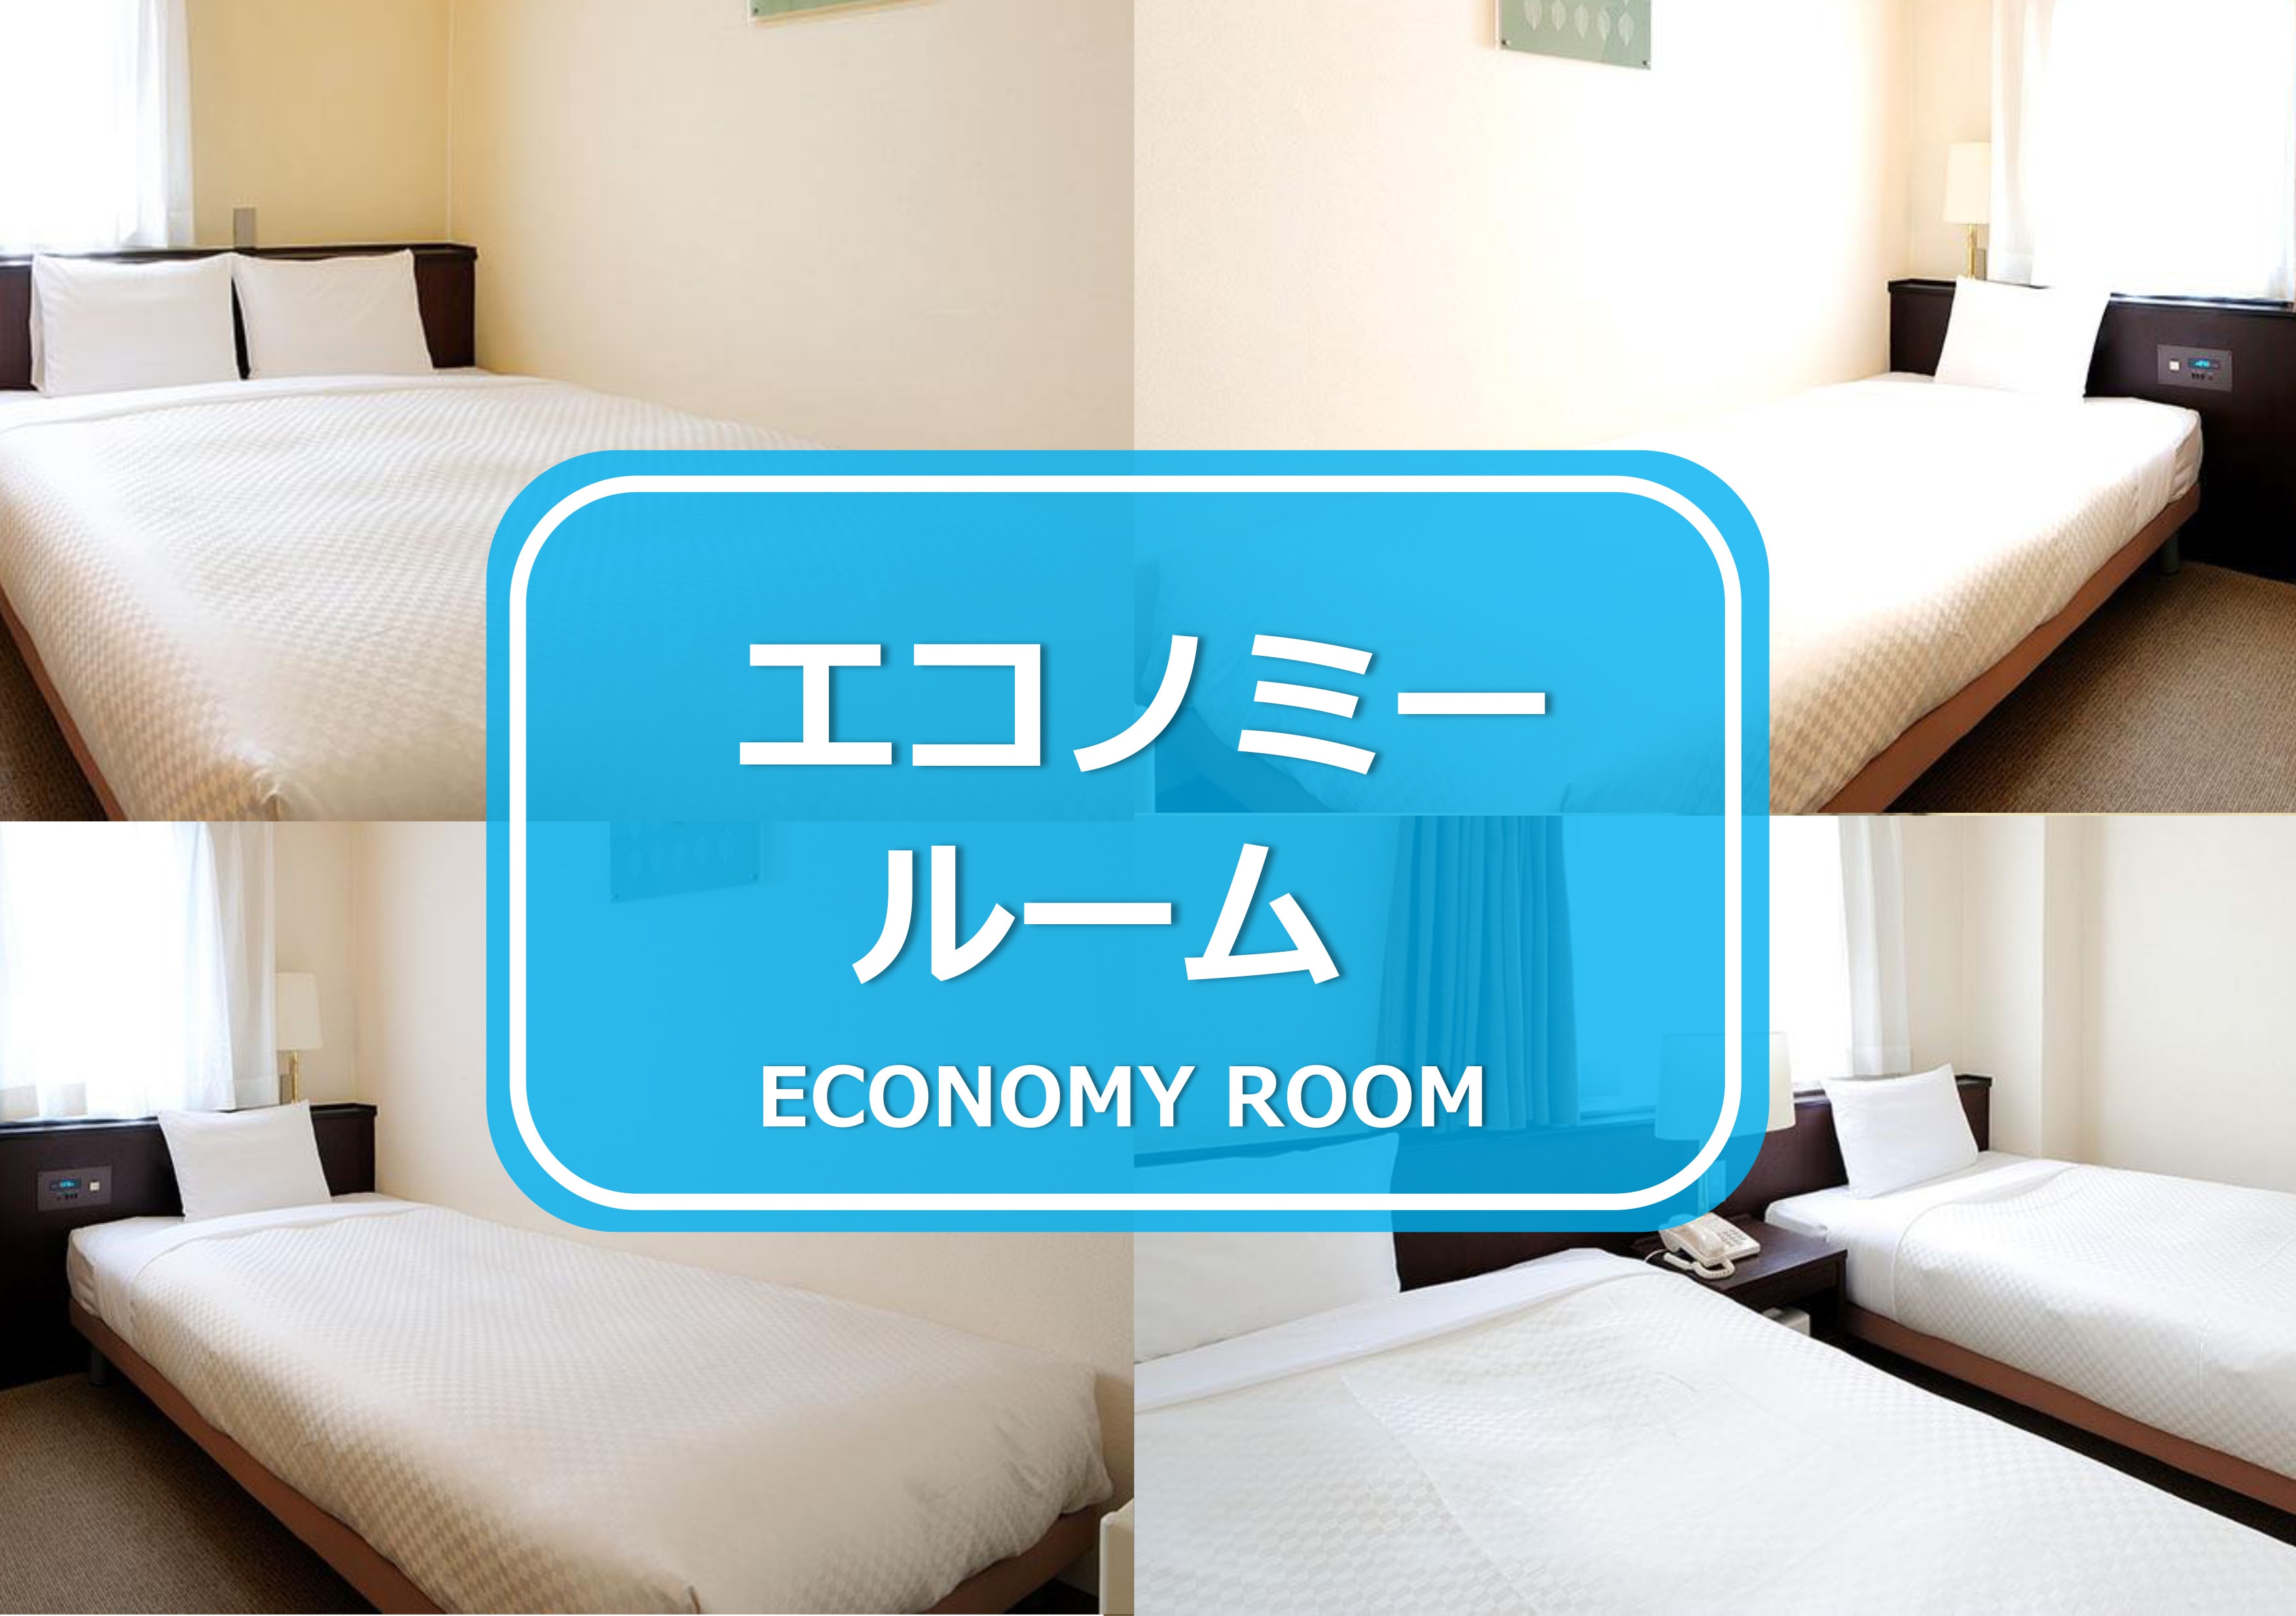 Economy room